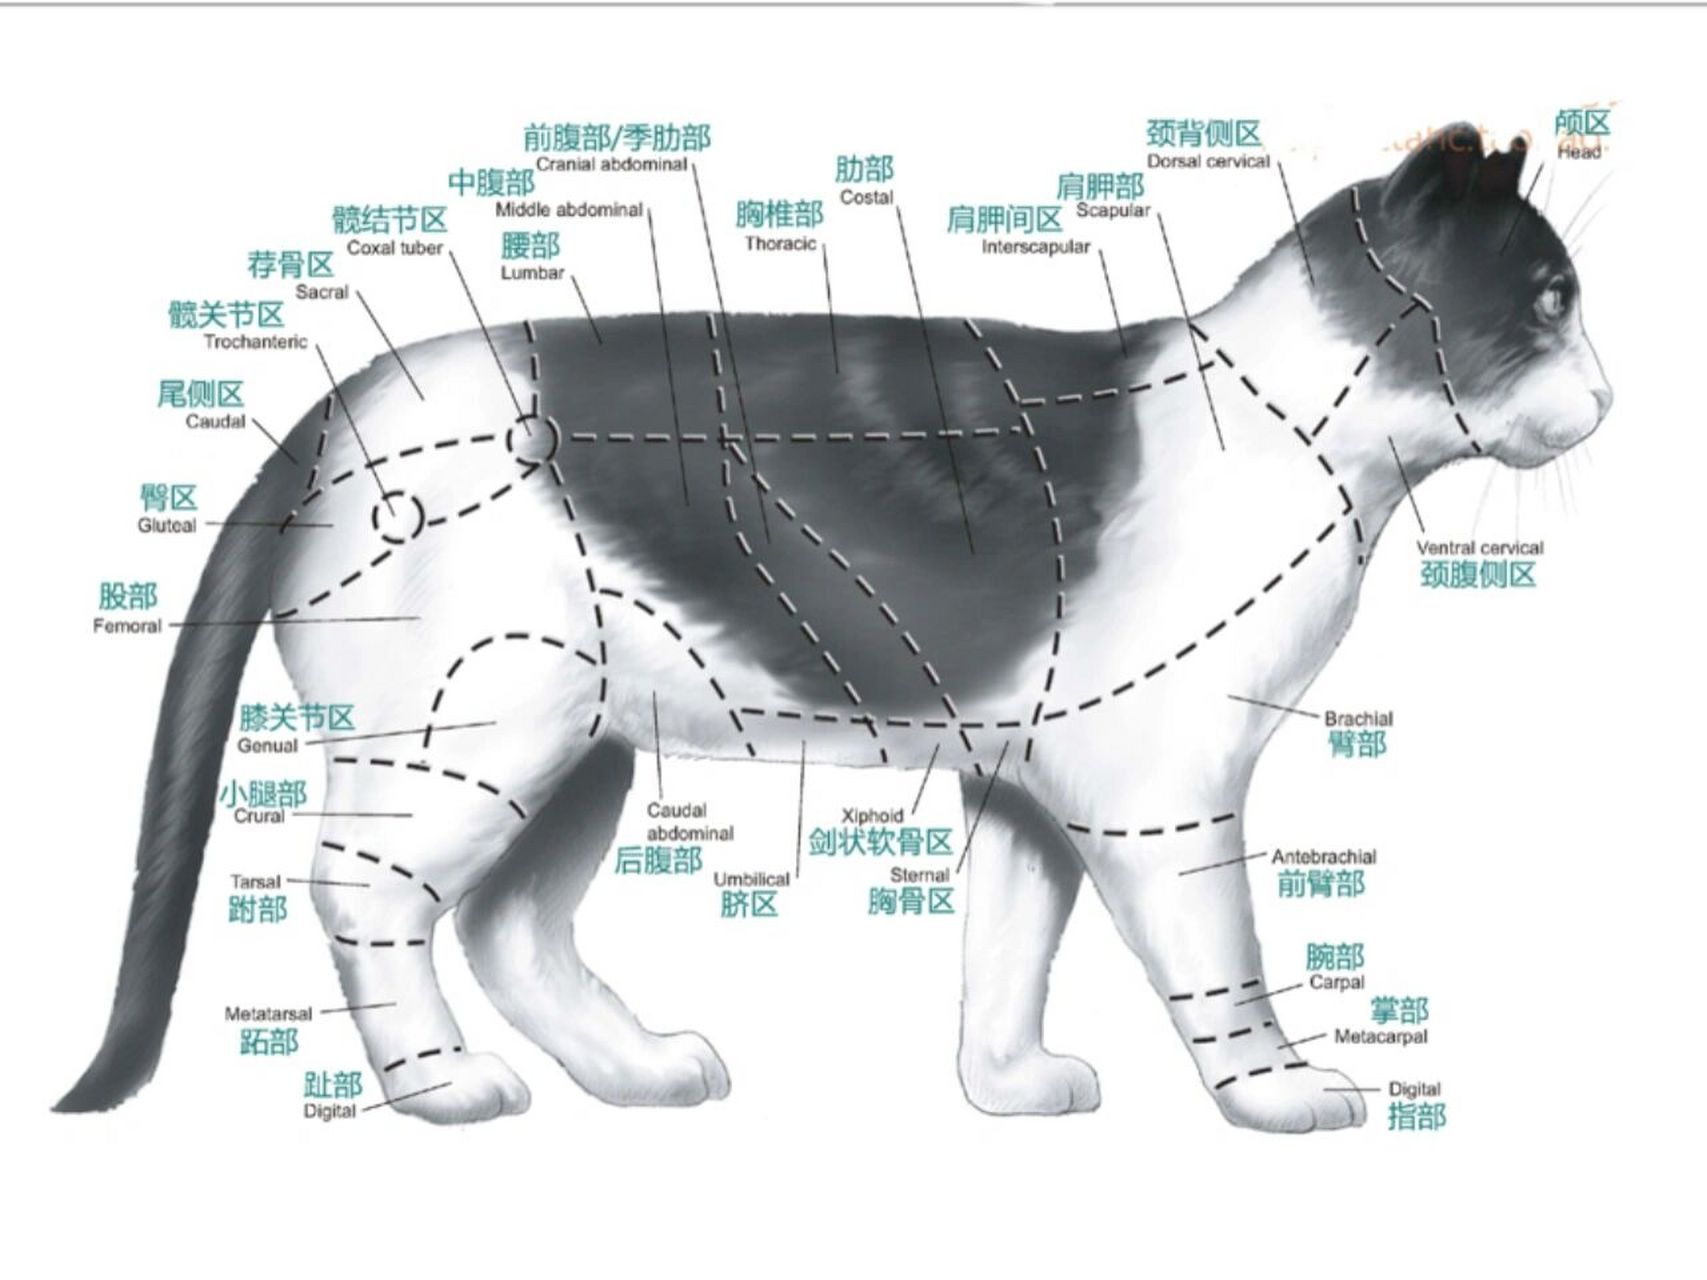 猫的解剖图及各部名称图片